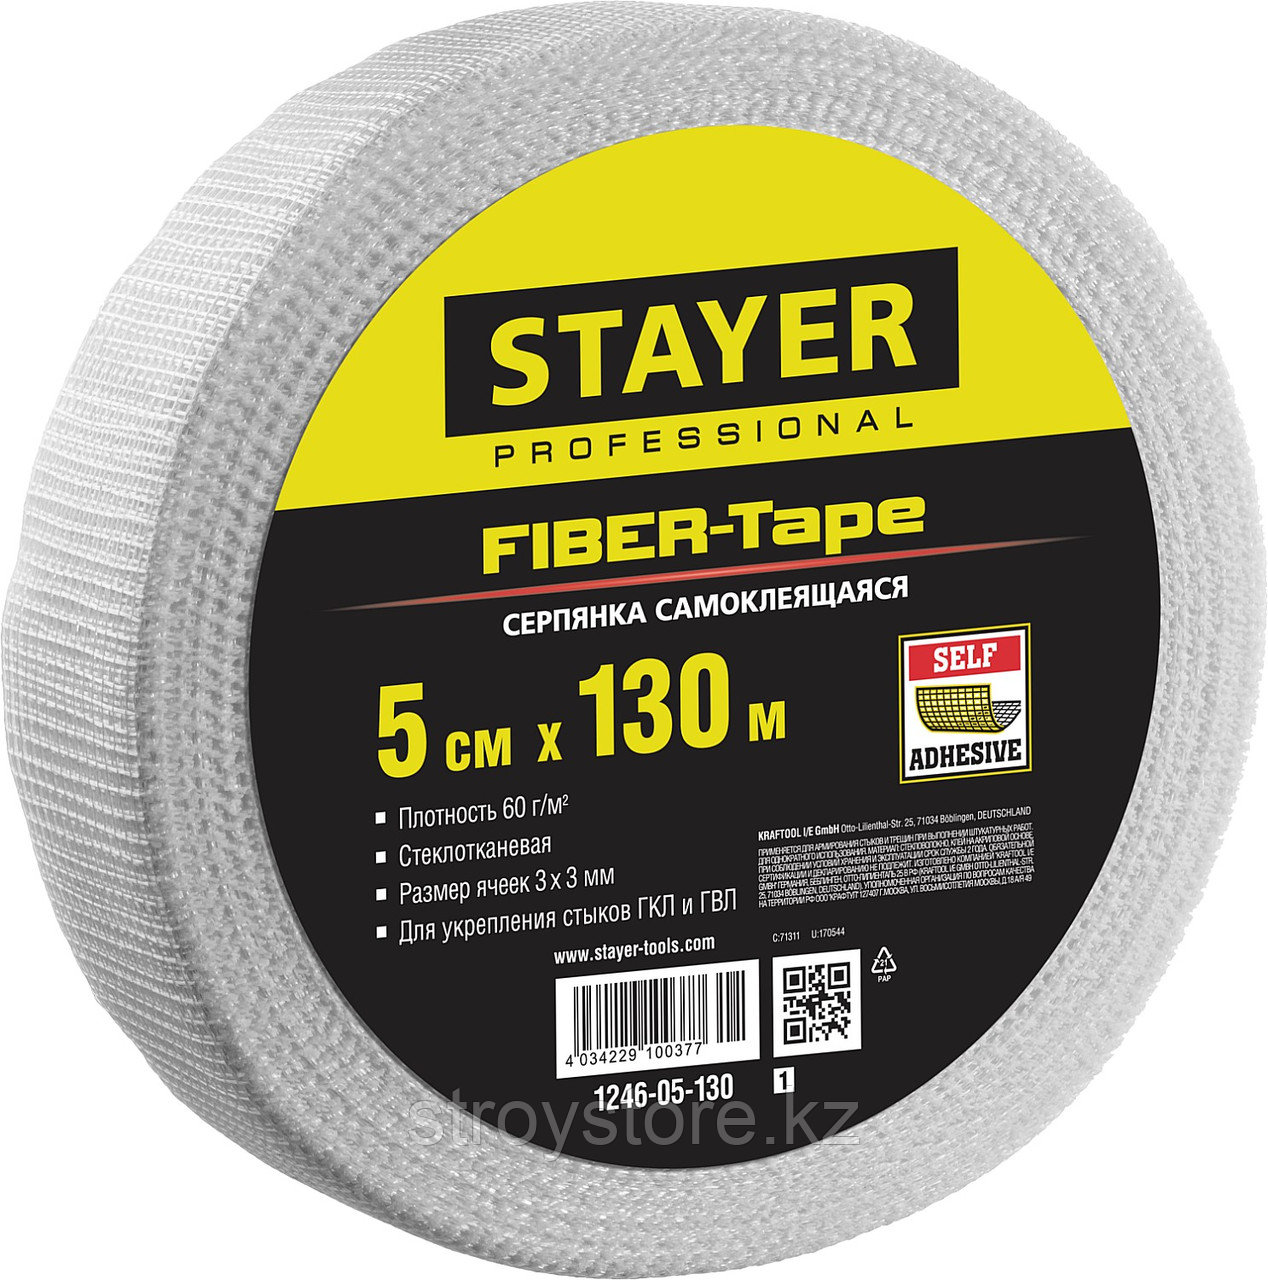 STAYER FIBER-Tape 5см х 130м 3х3 мм, Самоклеящаяся серпянка, PROFESSIONAL (1246-05-130)